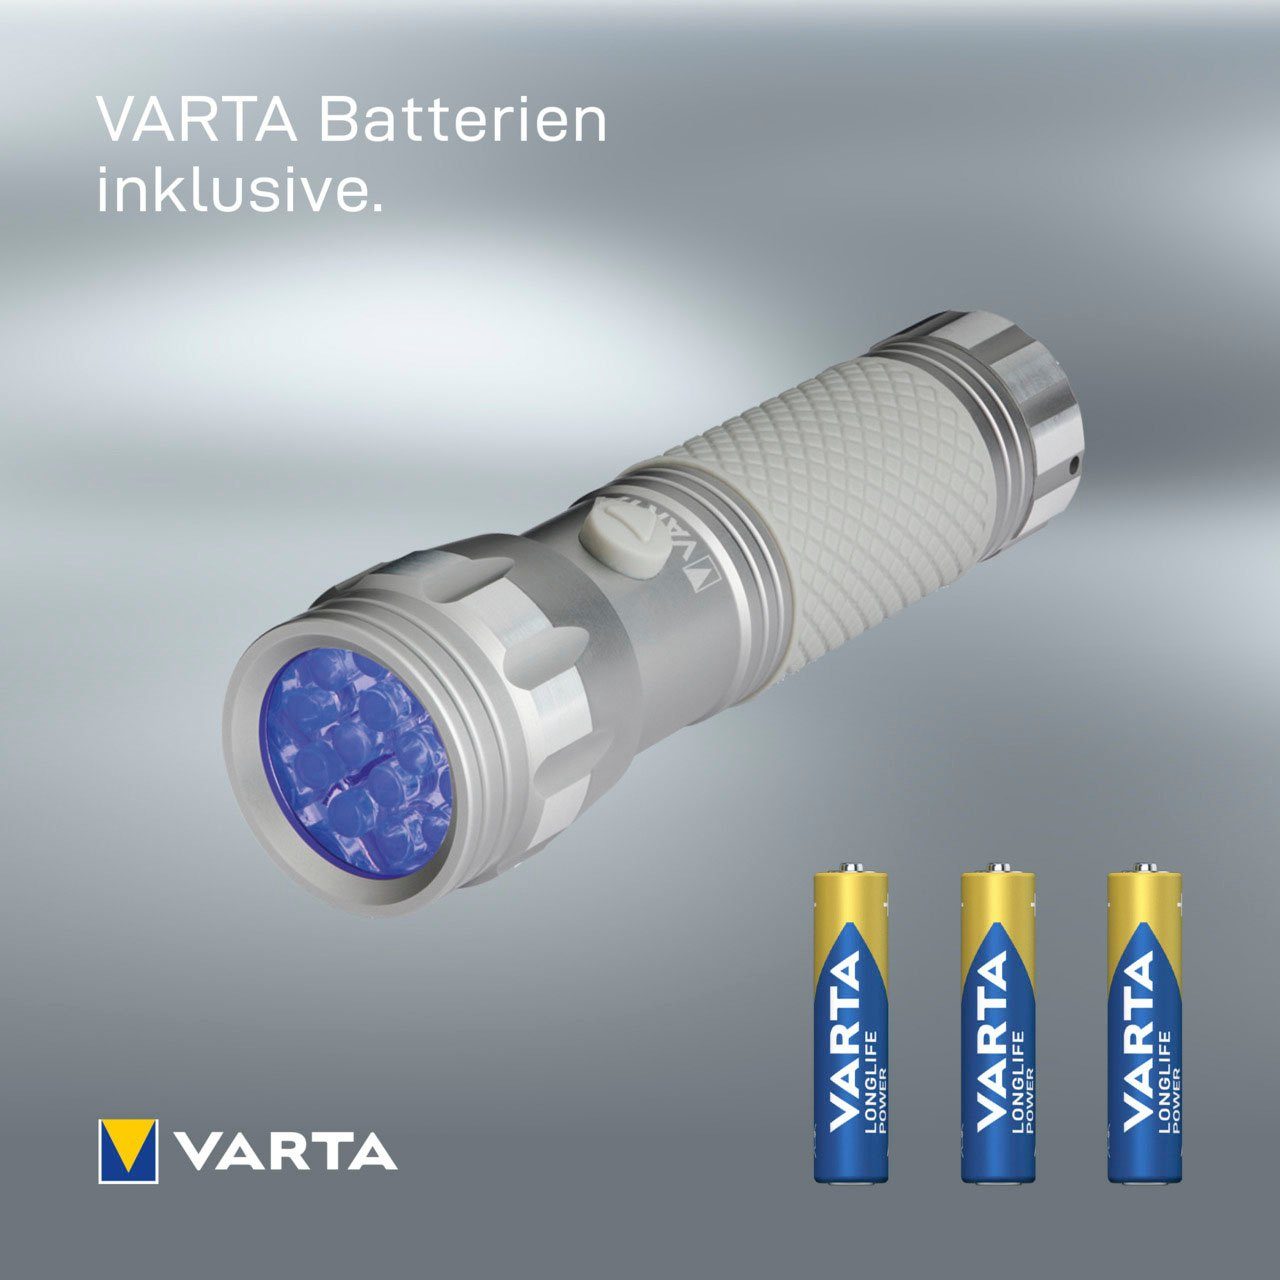 VARTA Taschenlampe Schwarzlicht mit sichtbar (Set), macht UV Licht Leuchte Hygienehilfe Unsichtbares